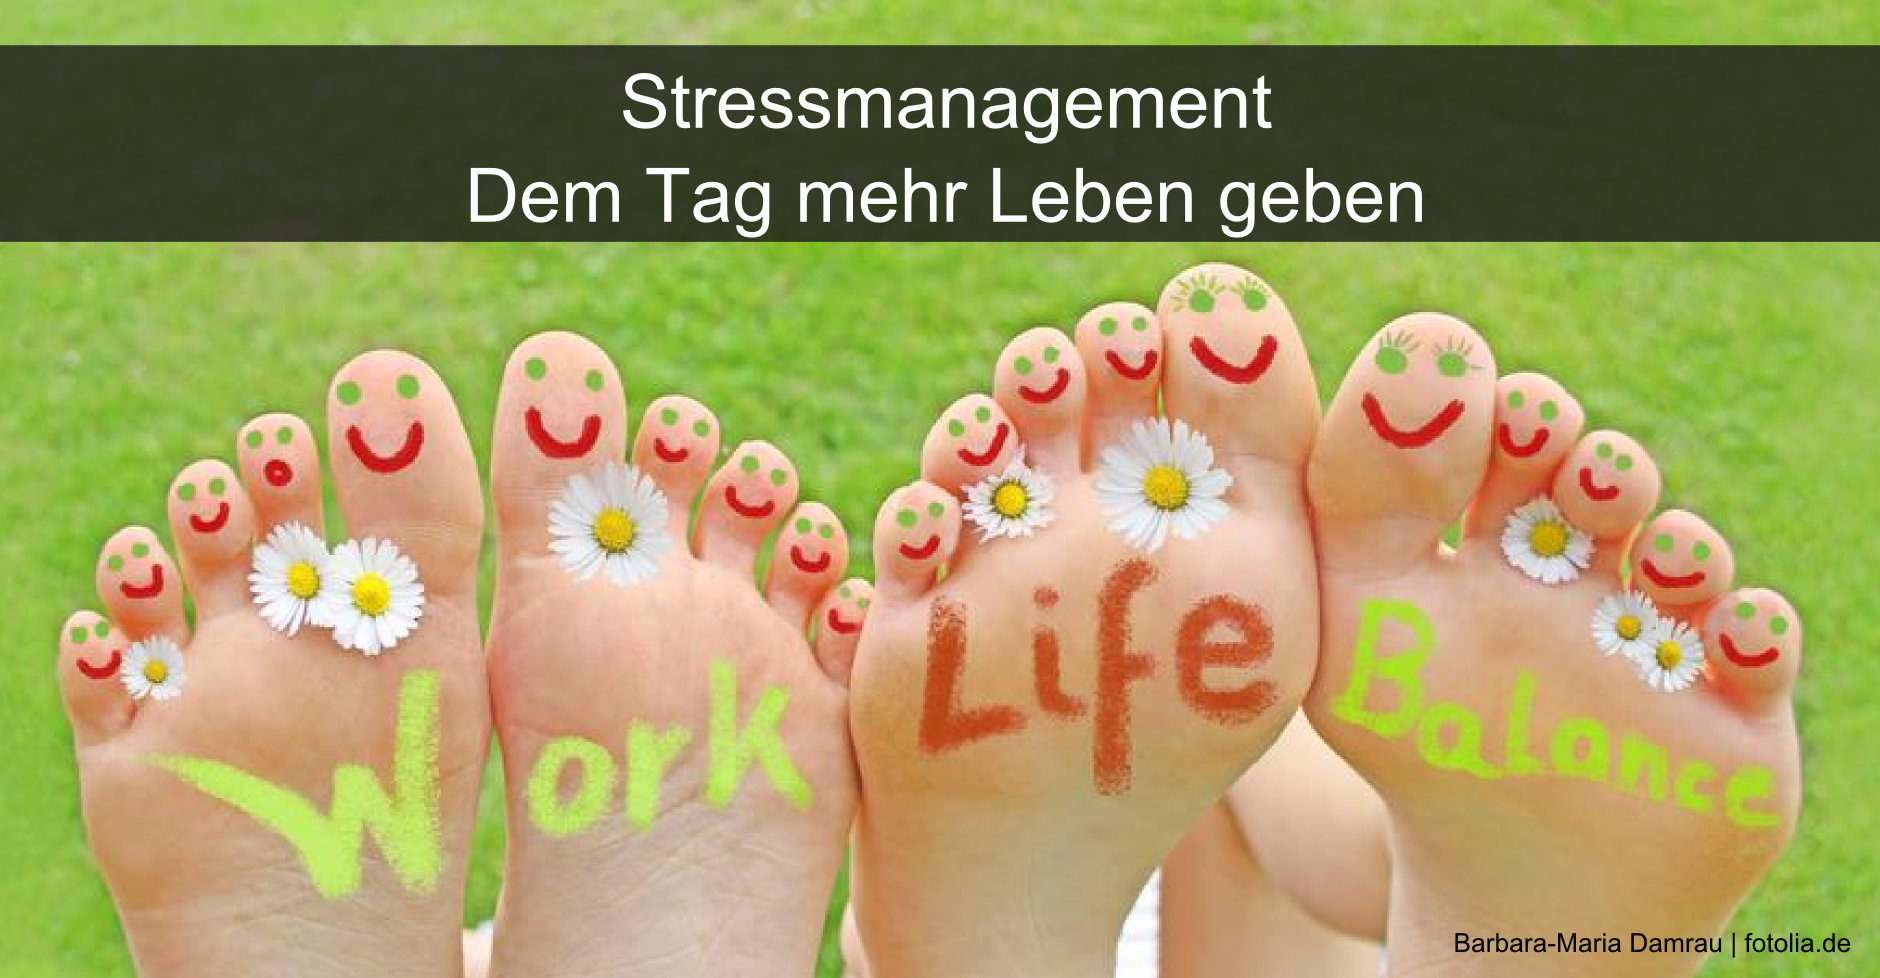 Stressmanagement ist auch für Erzieherinnen und Erzieher ein wichtiges Thema.